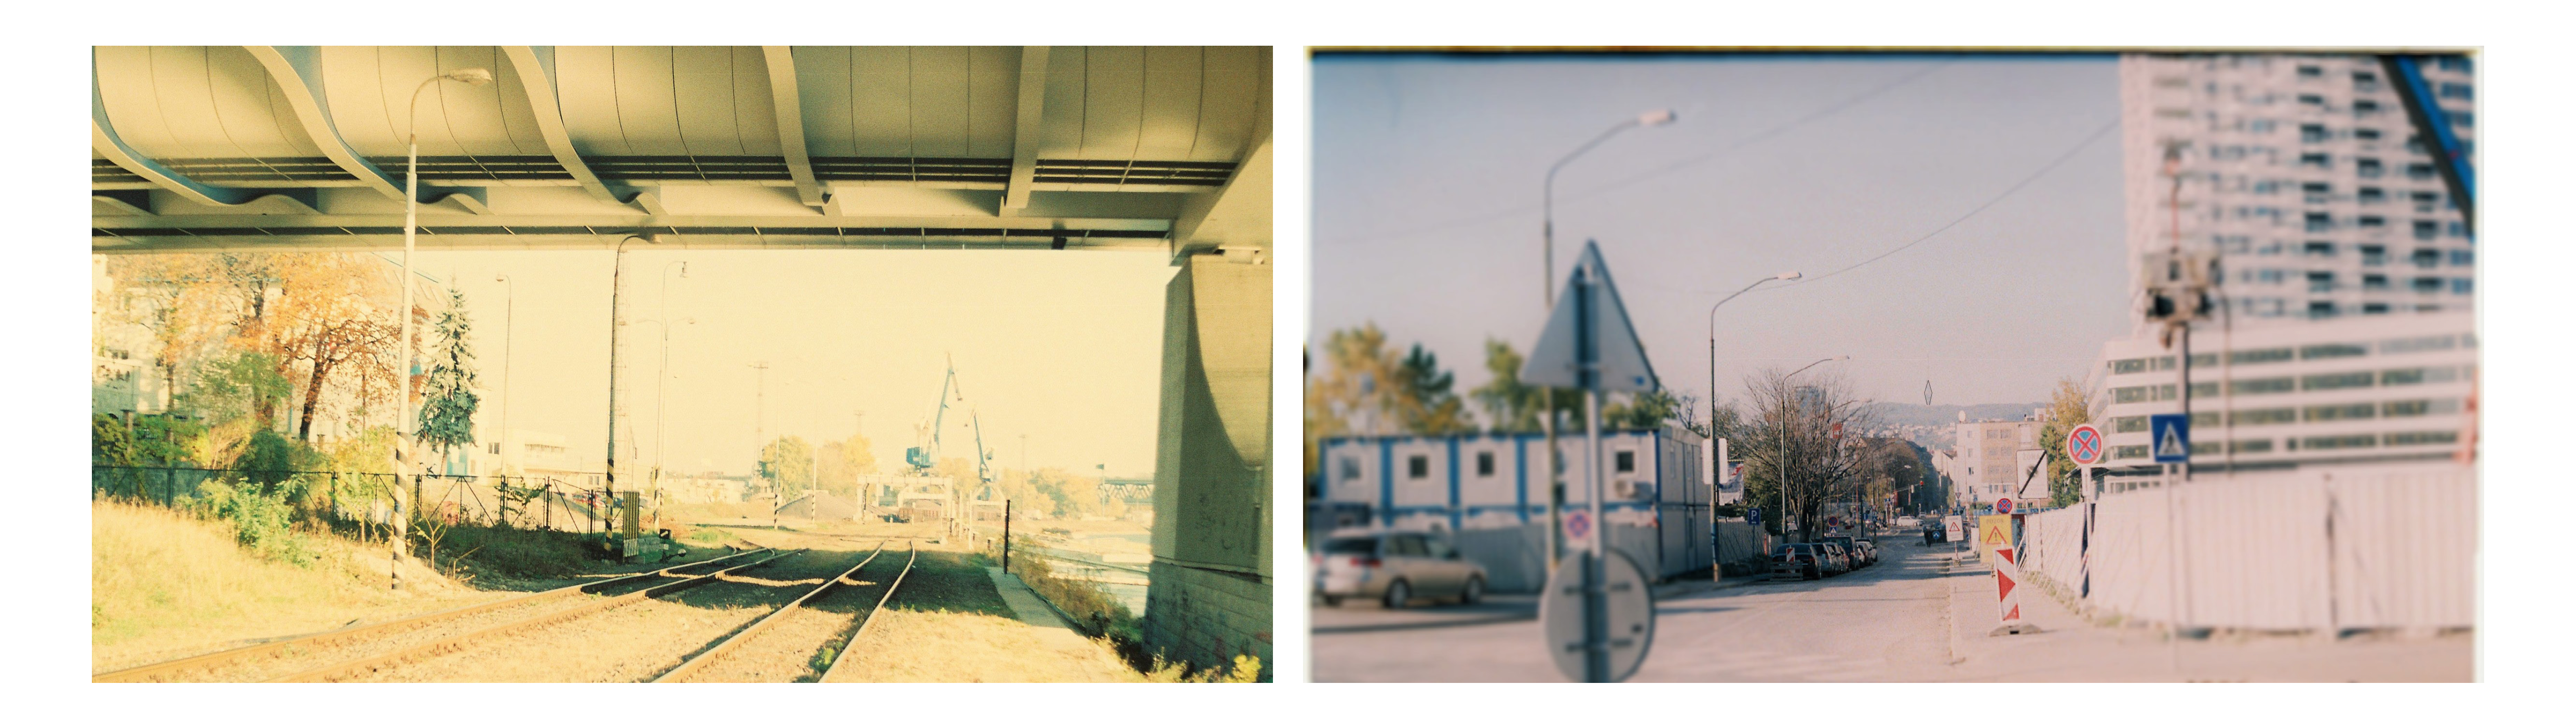 ČO: podmostový priestor ako vstup do iného územia, industrial regeneration. KDE: rozhranie nové mesto / „Hafen city“ (vľavo)  ČO: ulica vychádzajúca z mestskej štruktúry, výhľad na Kamzík ako orientačný bod, spojenie rieka- kopec. KDE: mestská ulica (vpravo)